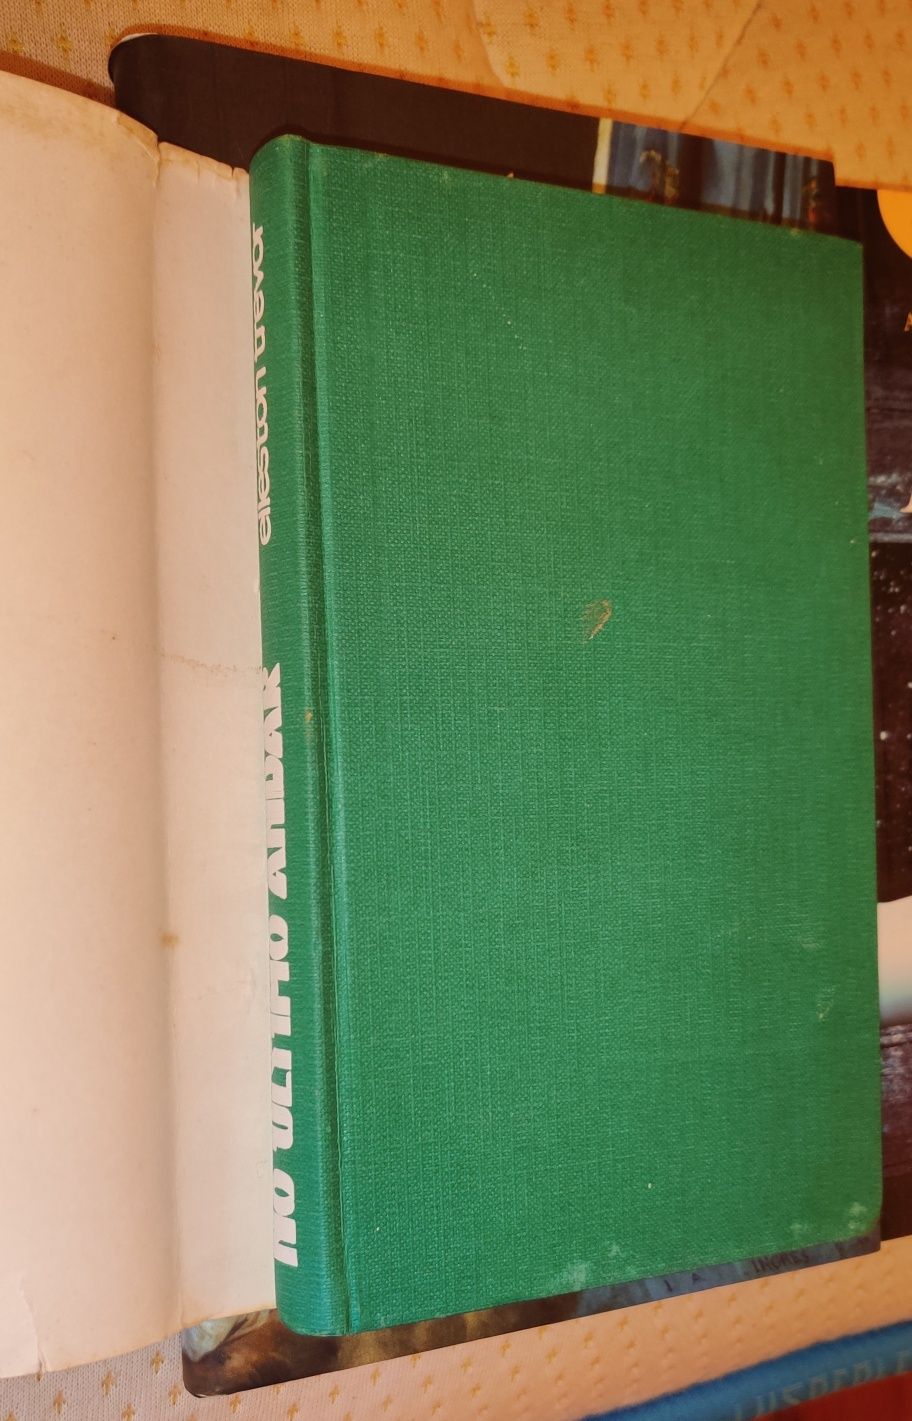 Livro No Último Andar, de Elleston Trevor
Livro antigo, com a capa de